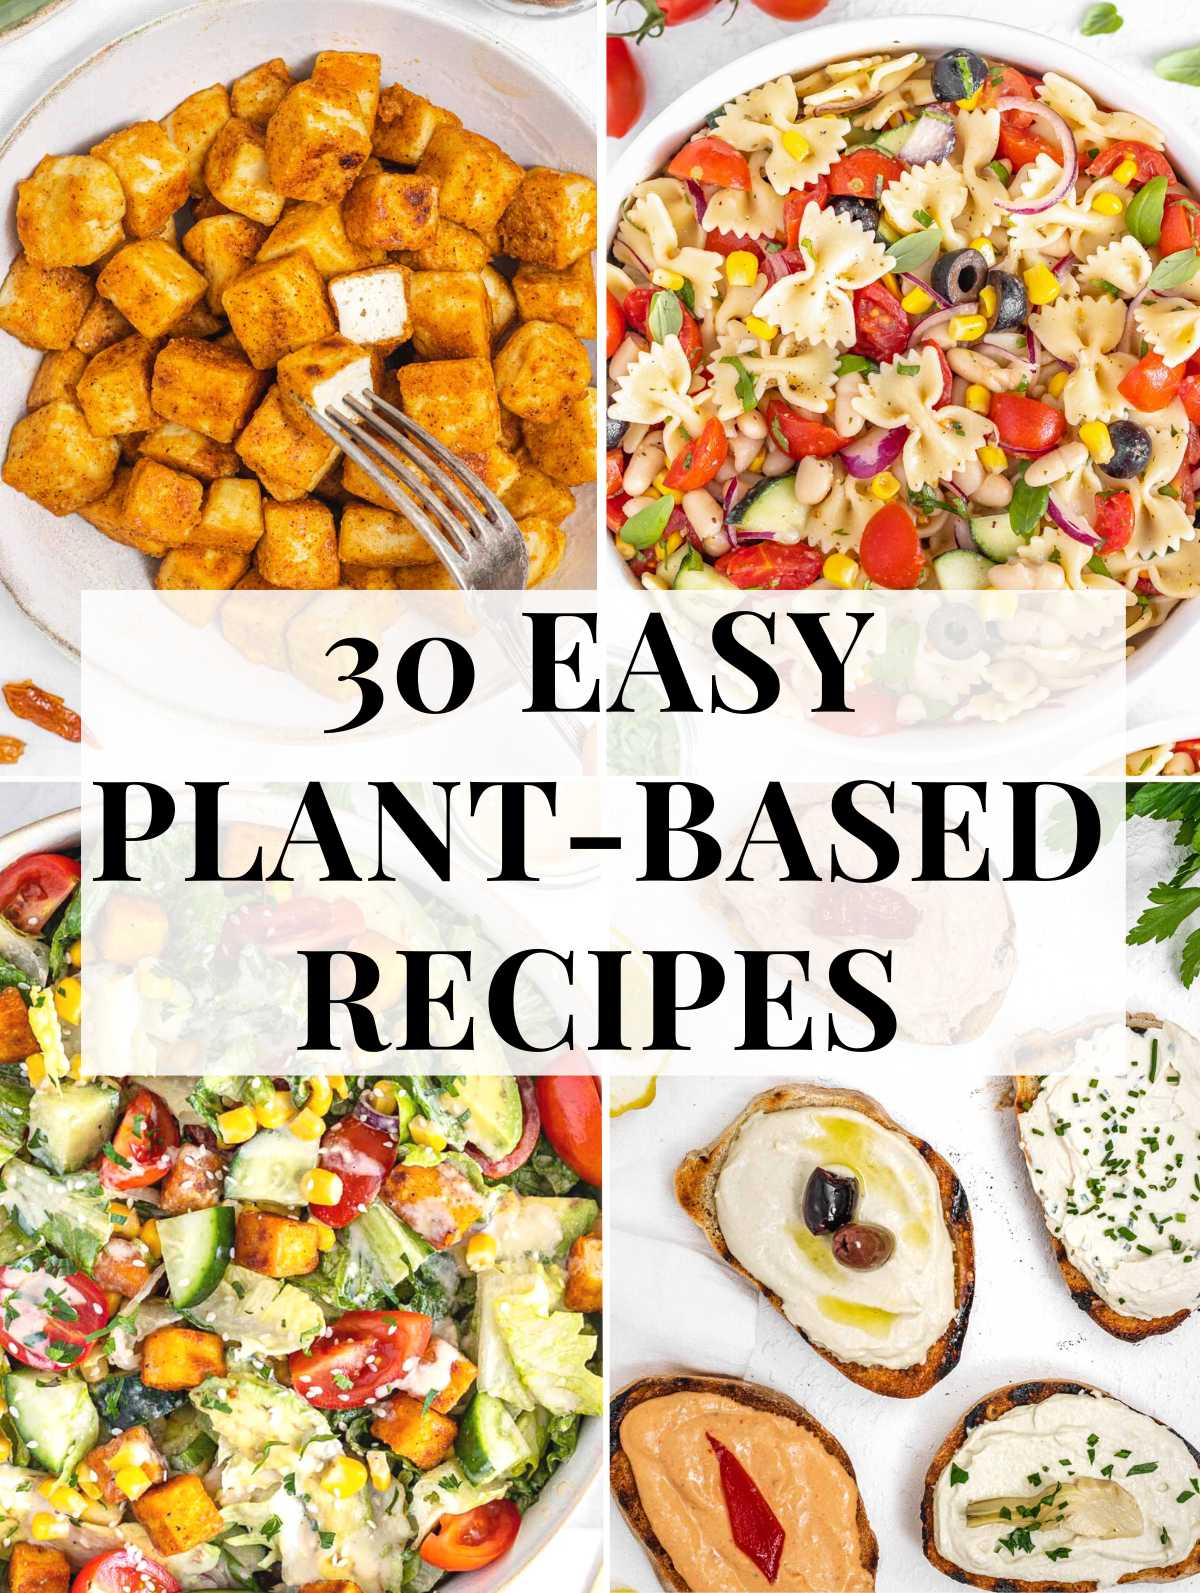 Plant-based beginner recipes